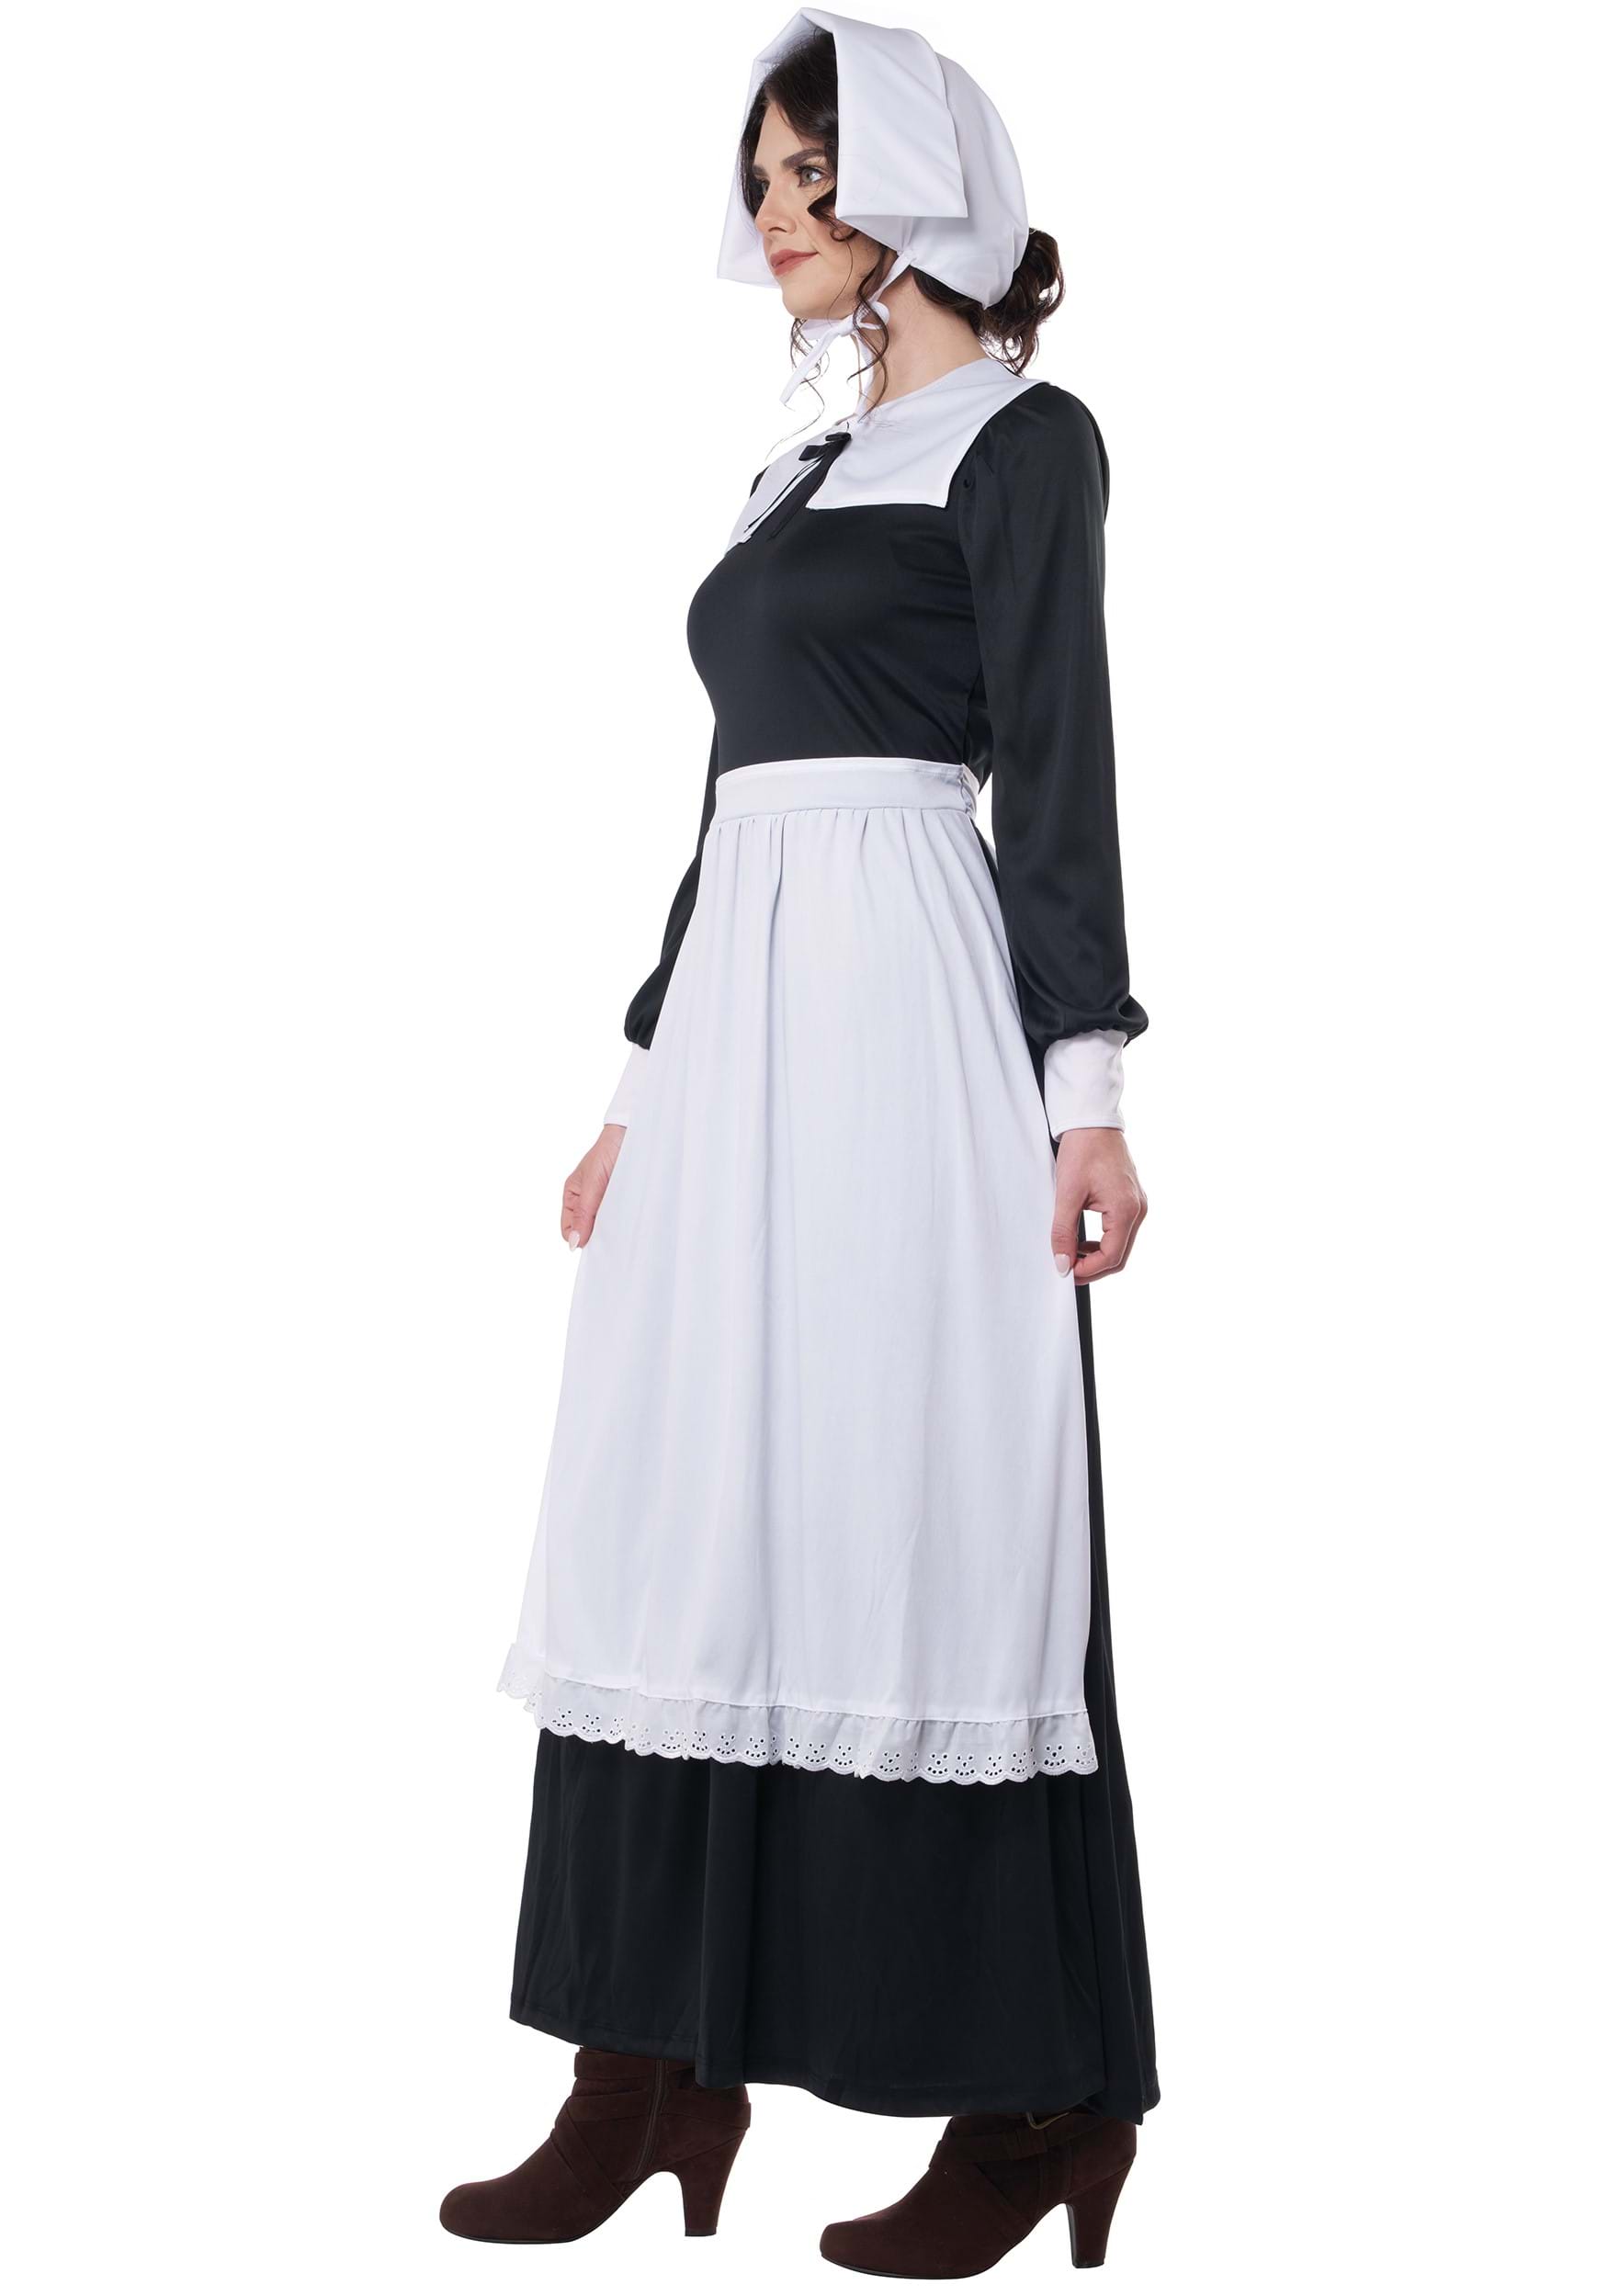 Pilgrim Fancy Dress Costume For Women